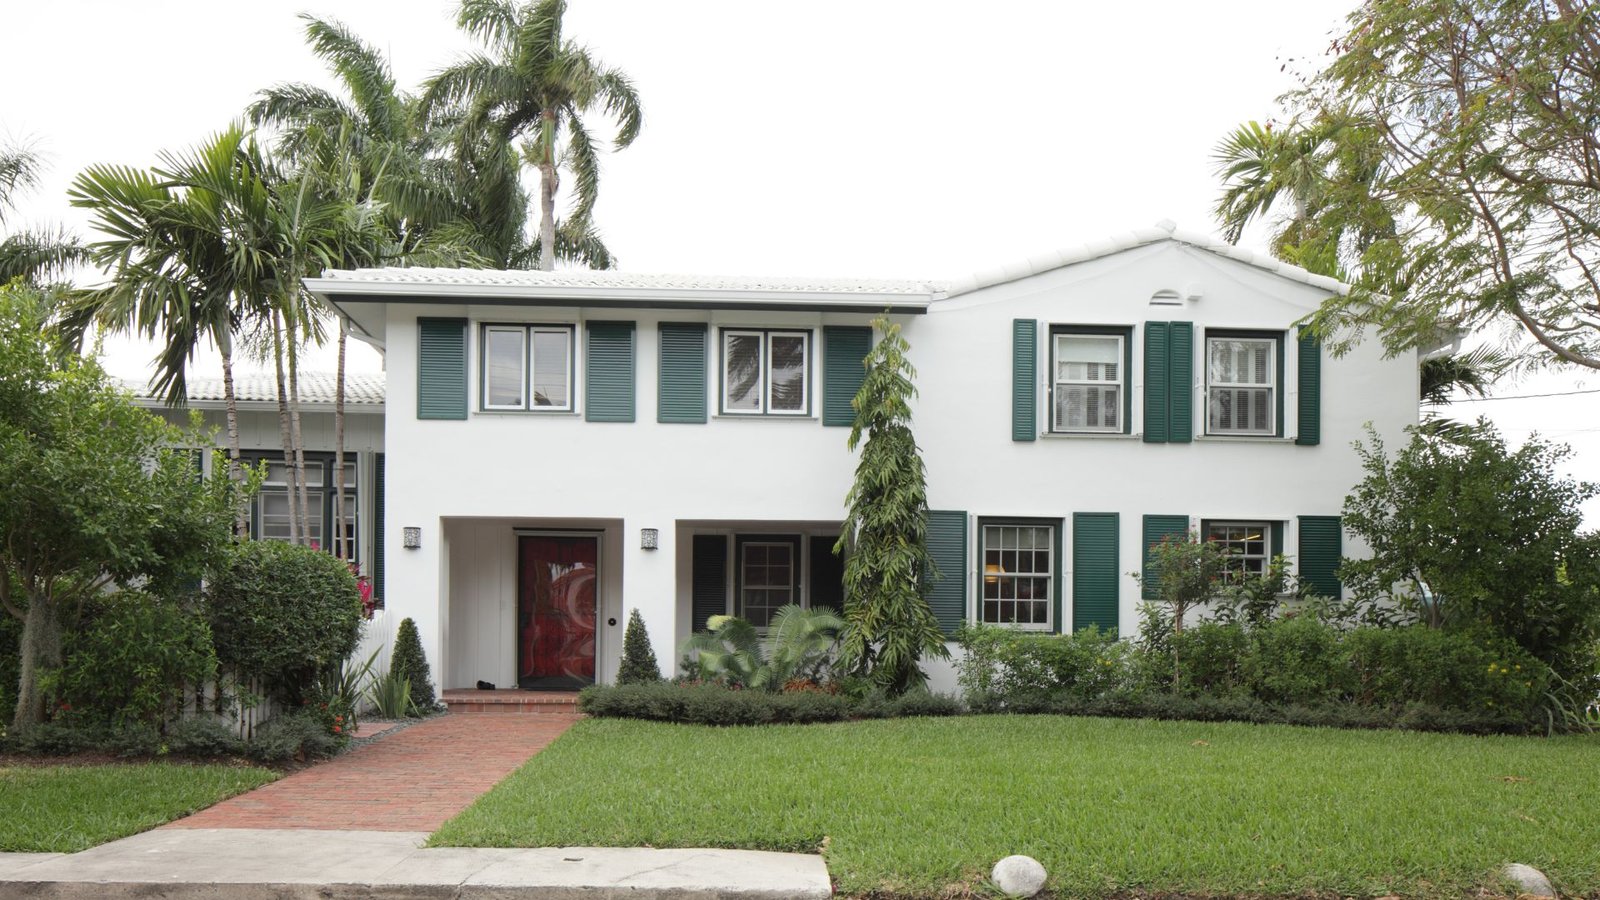 Vista frontal de una casa en venta en Florida - Propiedades en Venta por LUZ ANGELA AGREDO - Agente Inmobiliaria en Florida